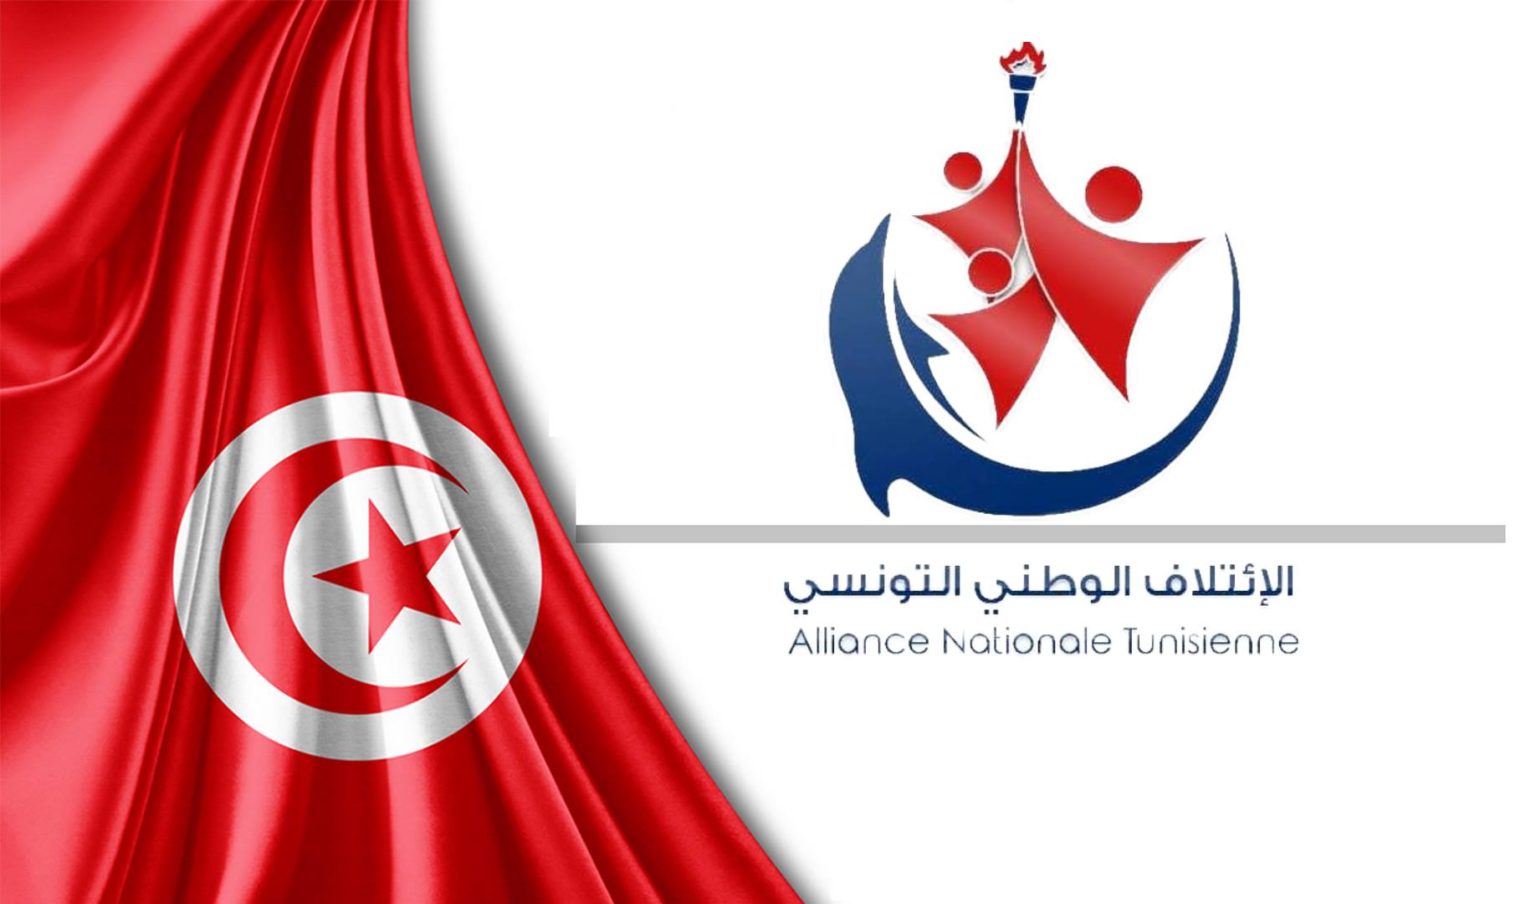 Épargnes postales des Tunisiens: L’Alliance Nationale Tunisienne dénonce “les mensonges” d’Ennahdha